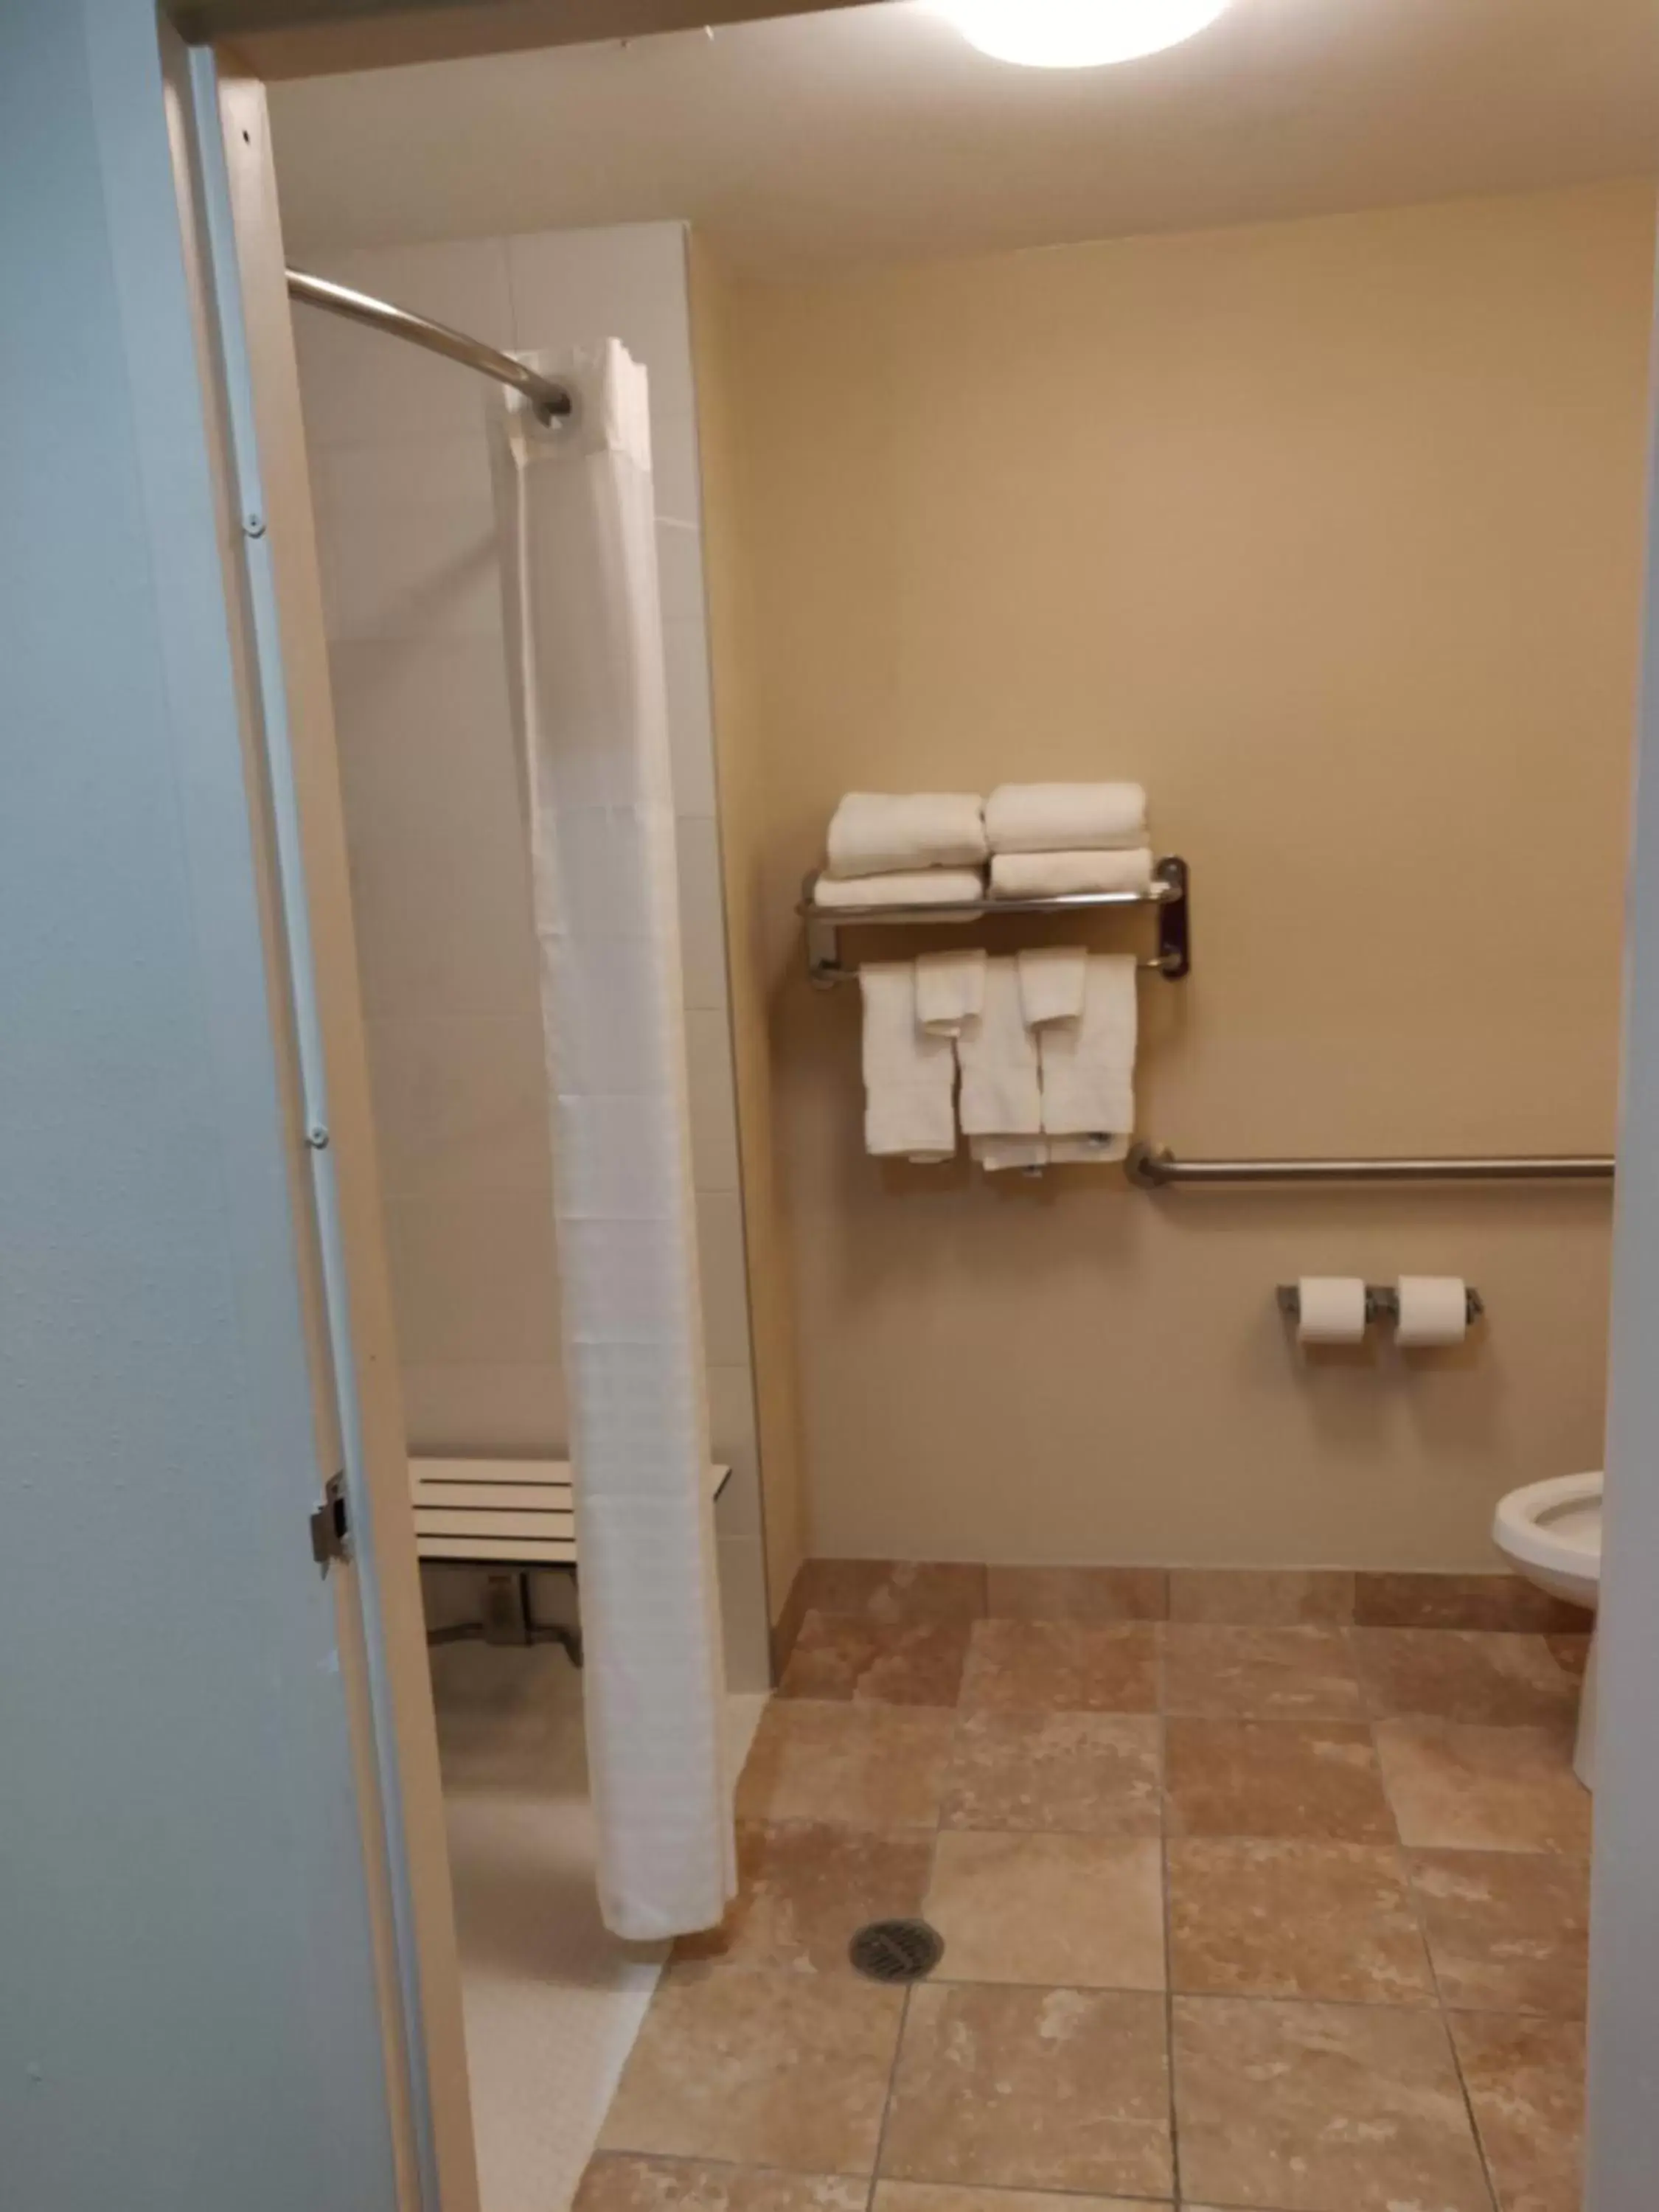 Shower, Bathroom in Comfort Inn Kennesaw